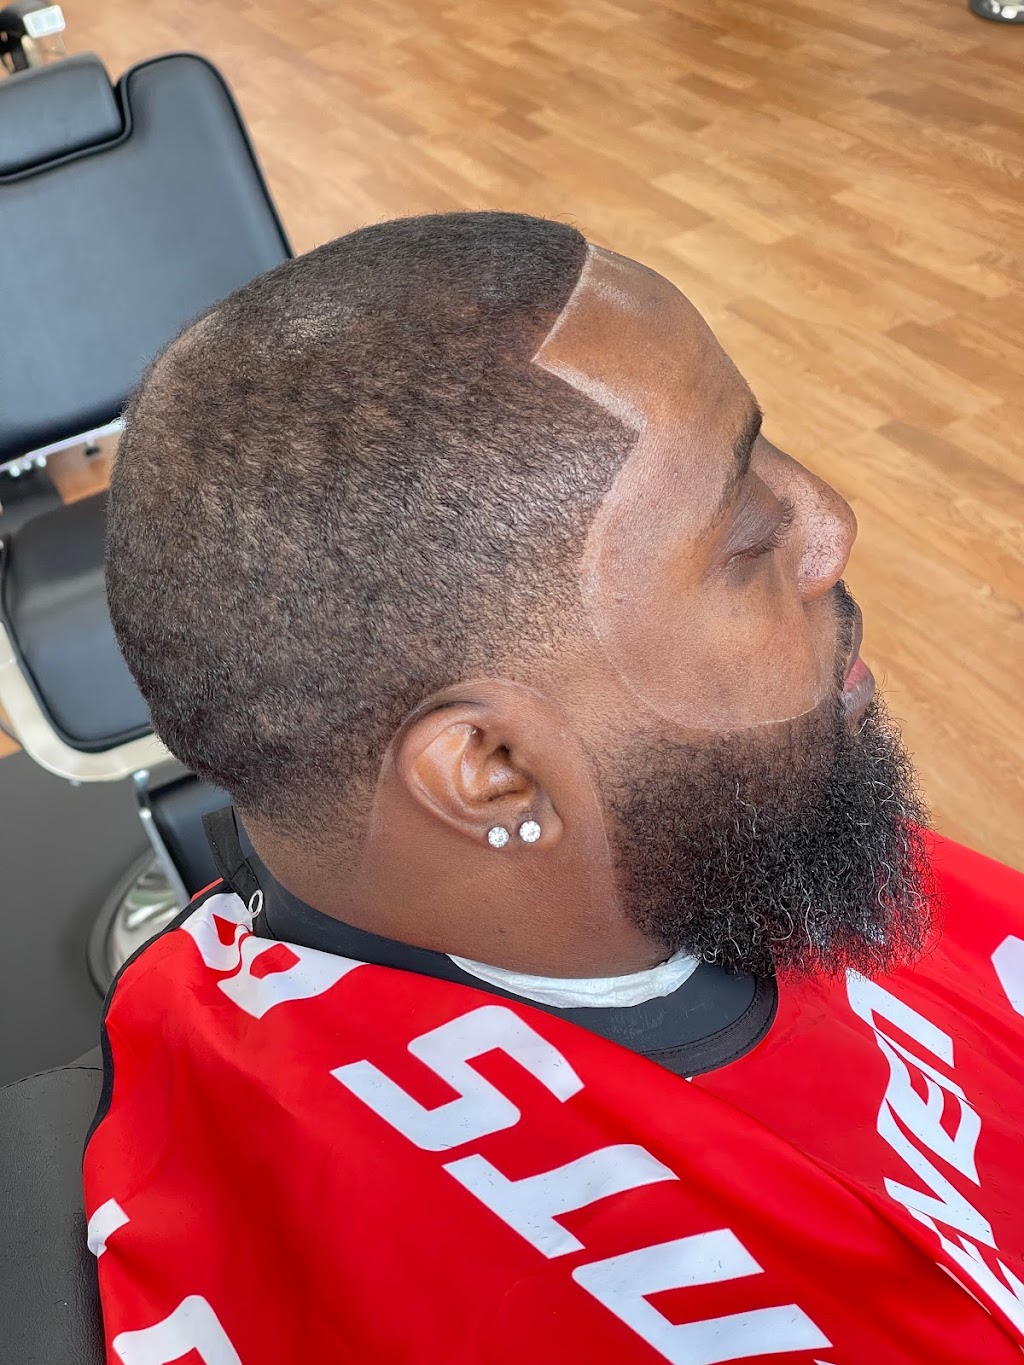 THE HAIRCUT PRO Deer Park NY Barbershop - Haircuts Fades Beards Facials Barber | 786 Grand Blvd, Deer Park, NY 11729 | Phone: (631) 940-9741